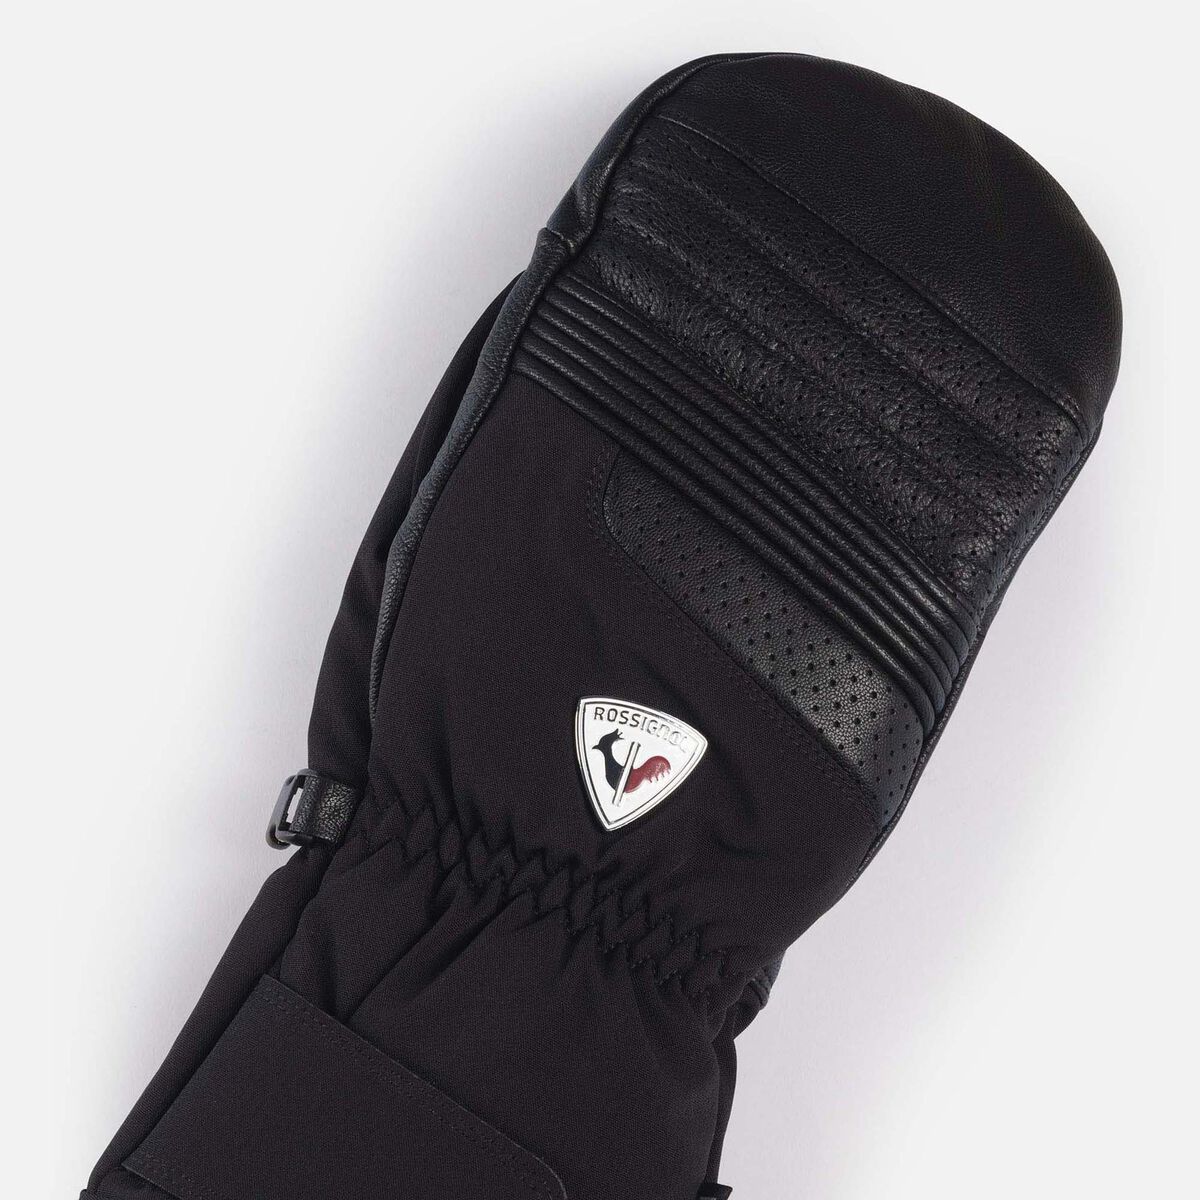 Rossignol Men's Concept leather waterproof mittens Black